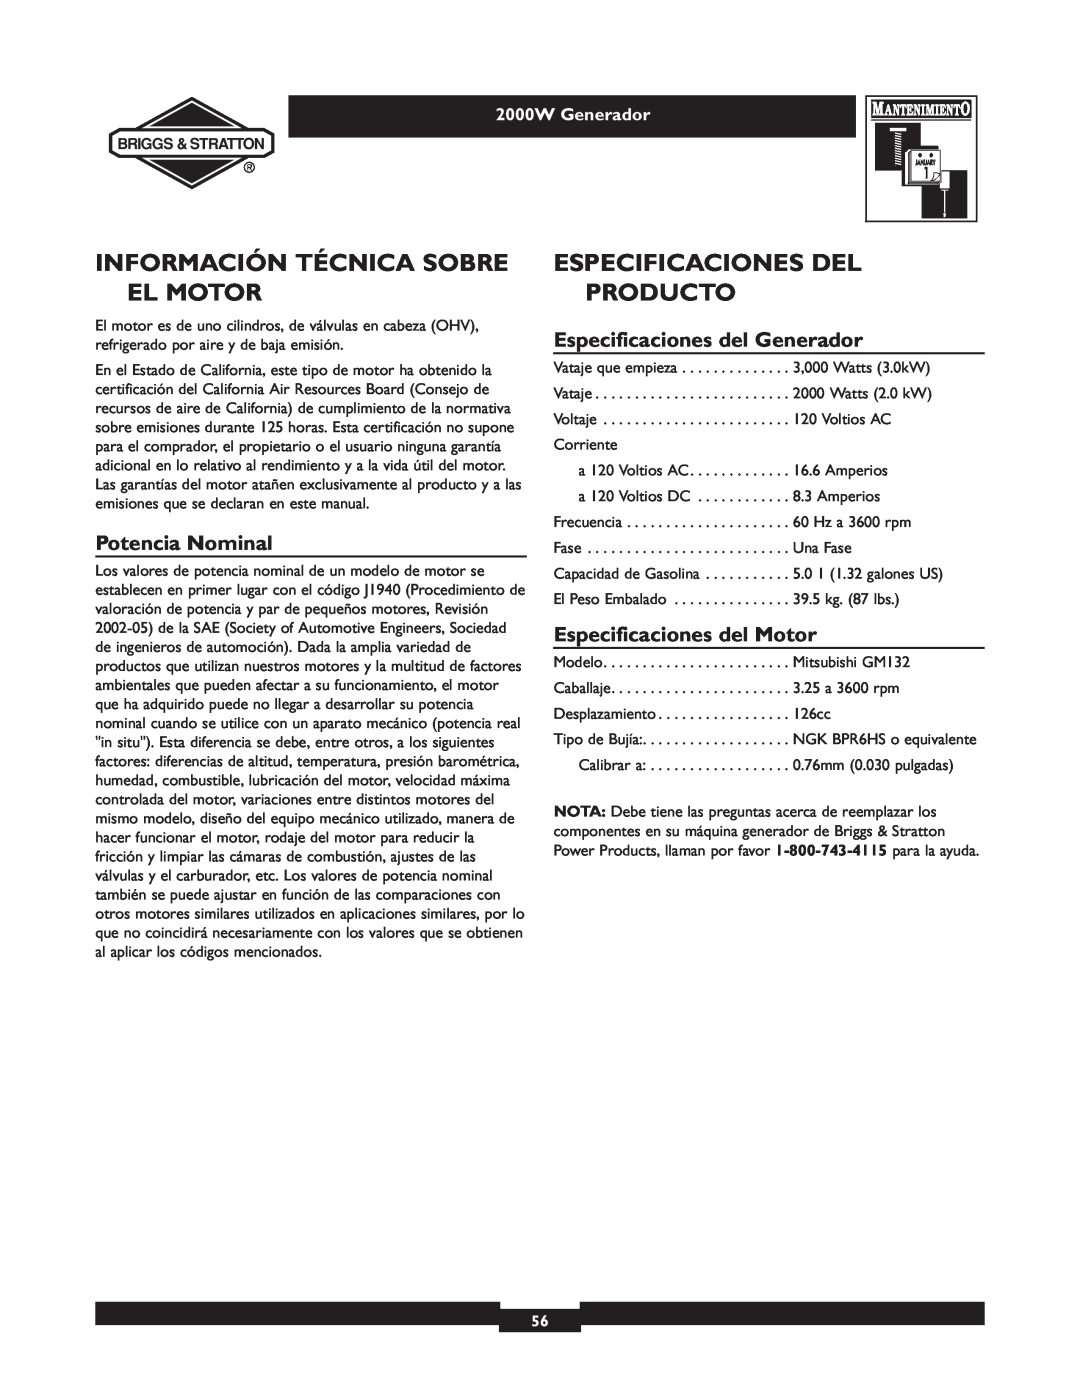 Briggs & Stratton 30239 owner manual Información Técnica Sobre El Motor, Especificaciones Del Producto, Potencia Nominal 